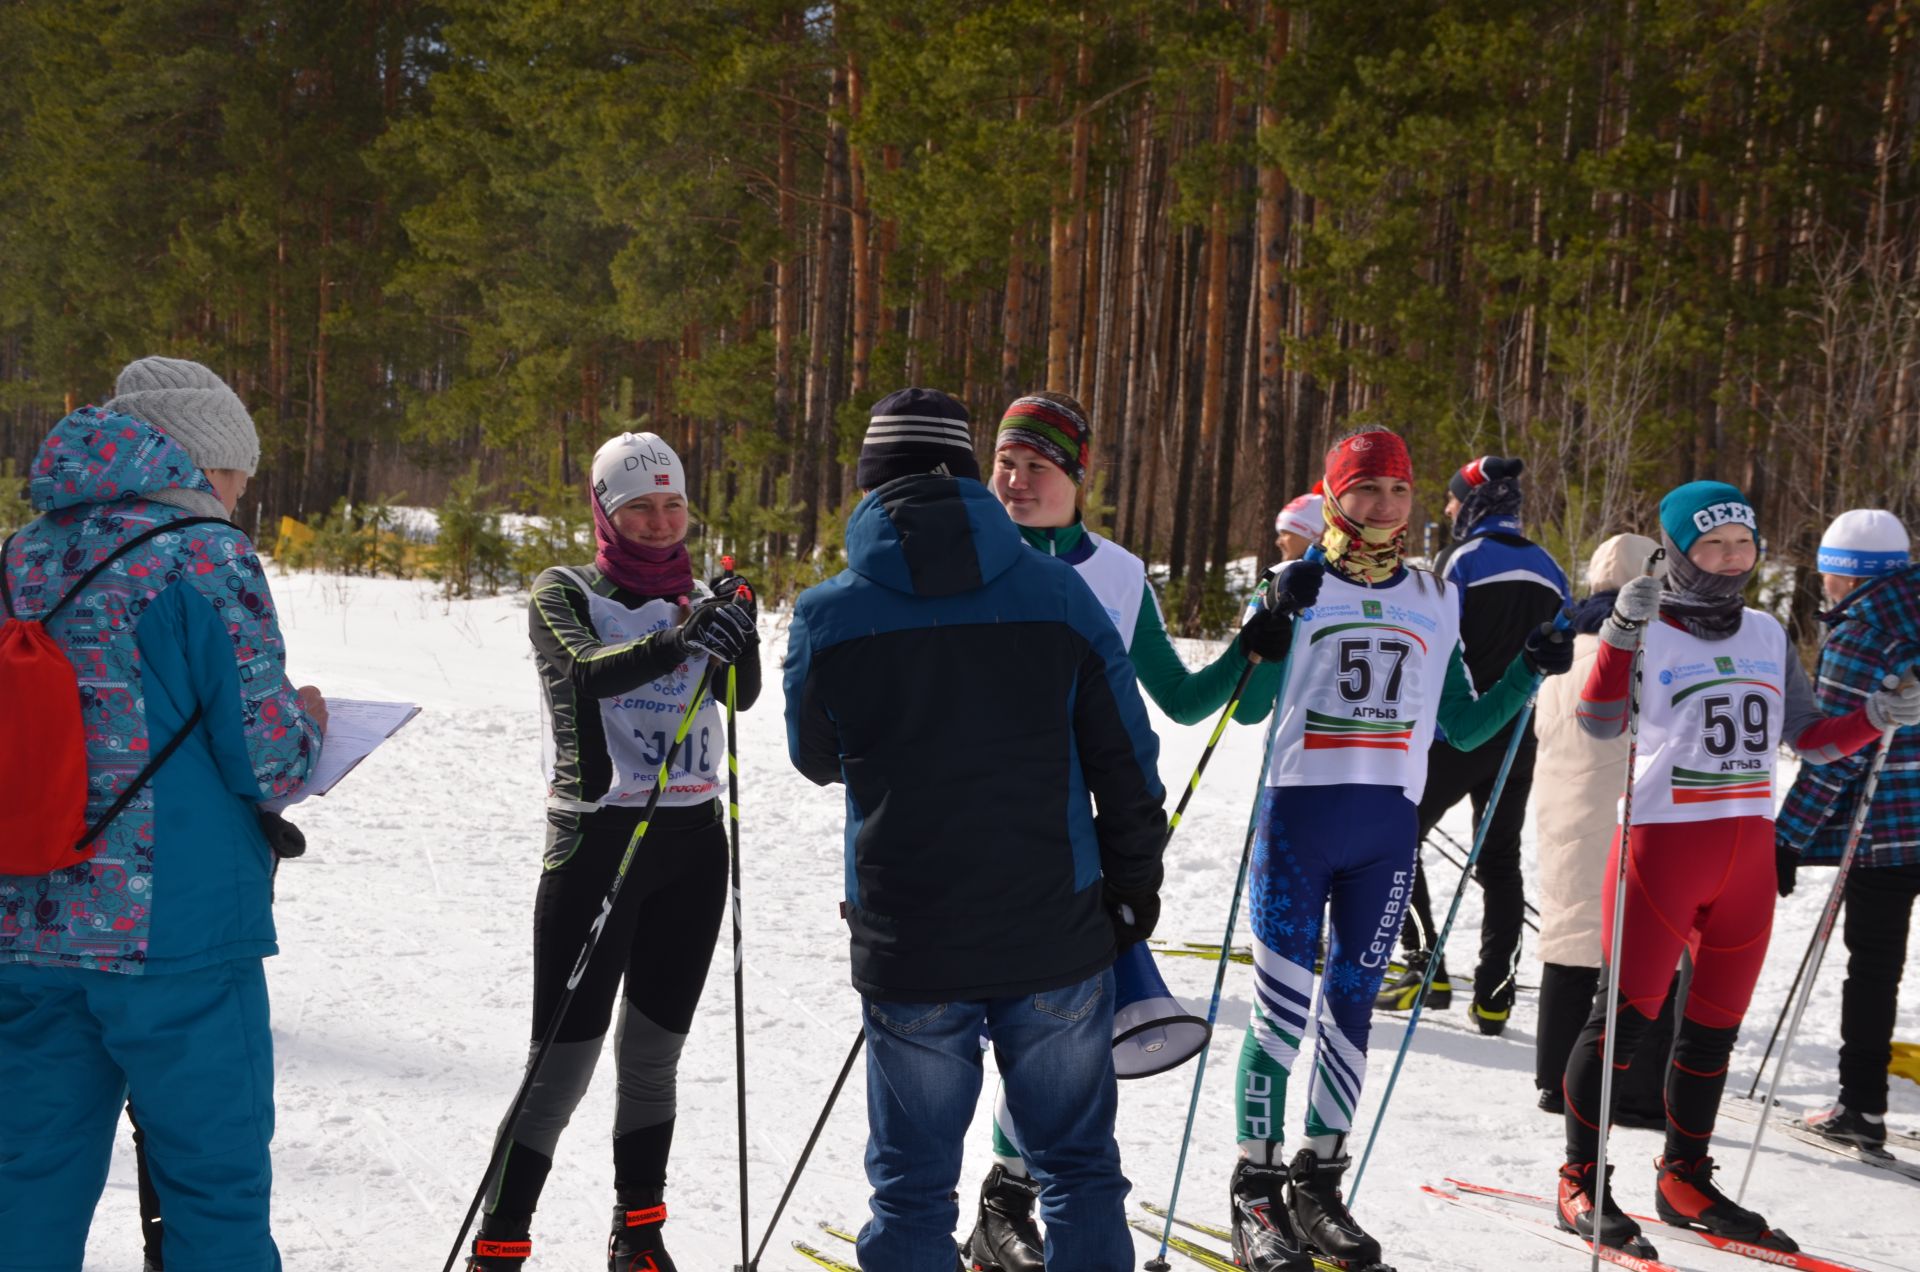 Спортивный праздник "Марийская лыжня" в этом году&nbsp;впервые прошел в "Орешнике" г. Агрыза